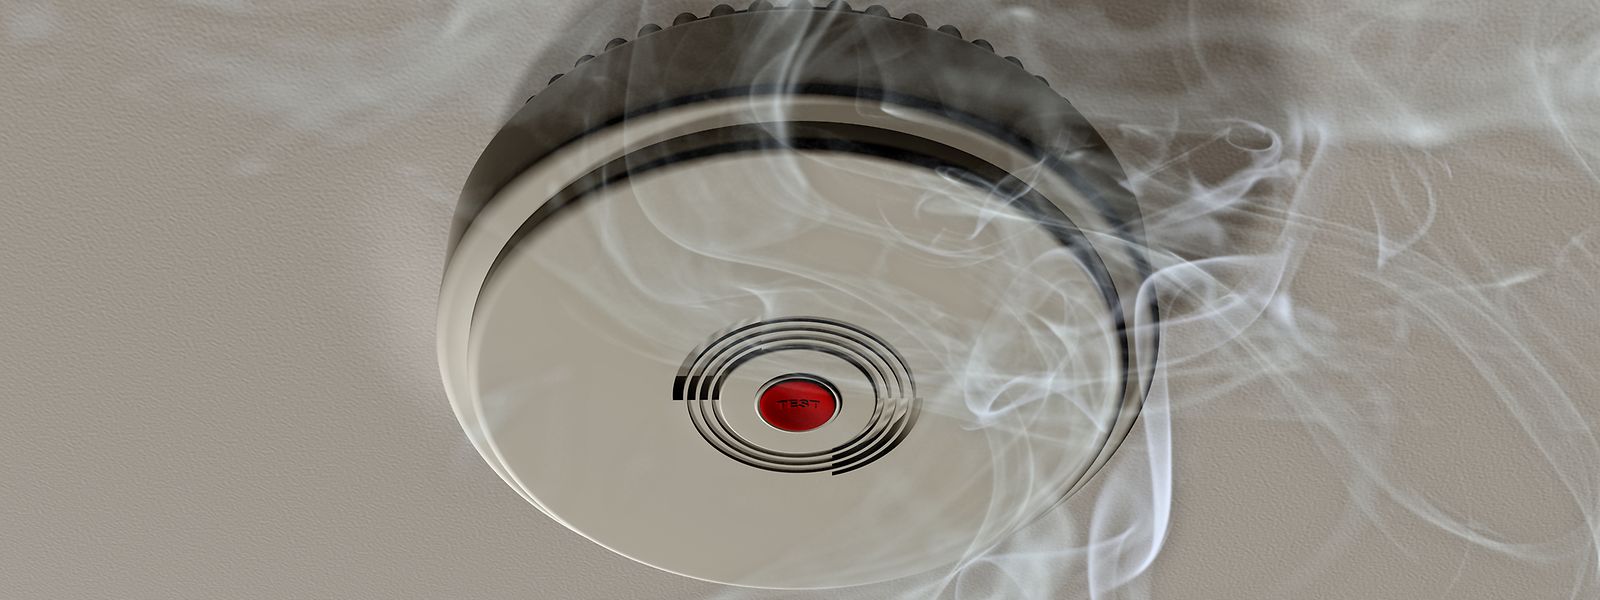 Des contrôles de fumée réguliers doivent être effectués sur les détecteurs pour s'assurer que les dispositifs fonctionnent toujours. Il faut penser à remplacer les piles. 